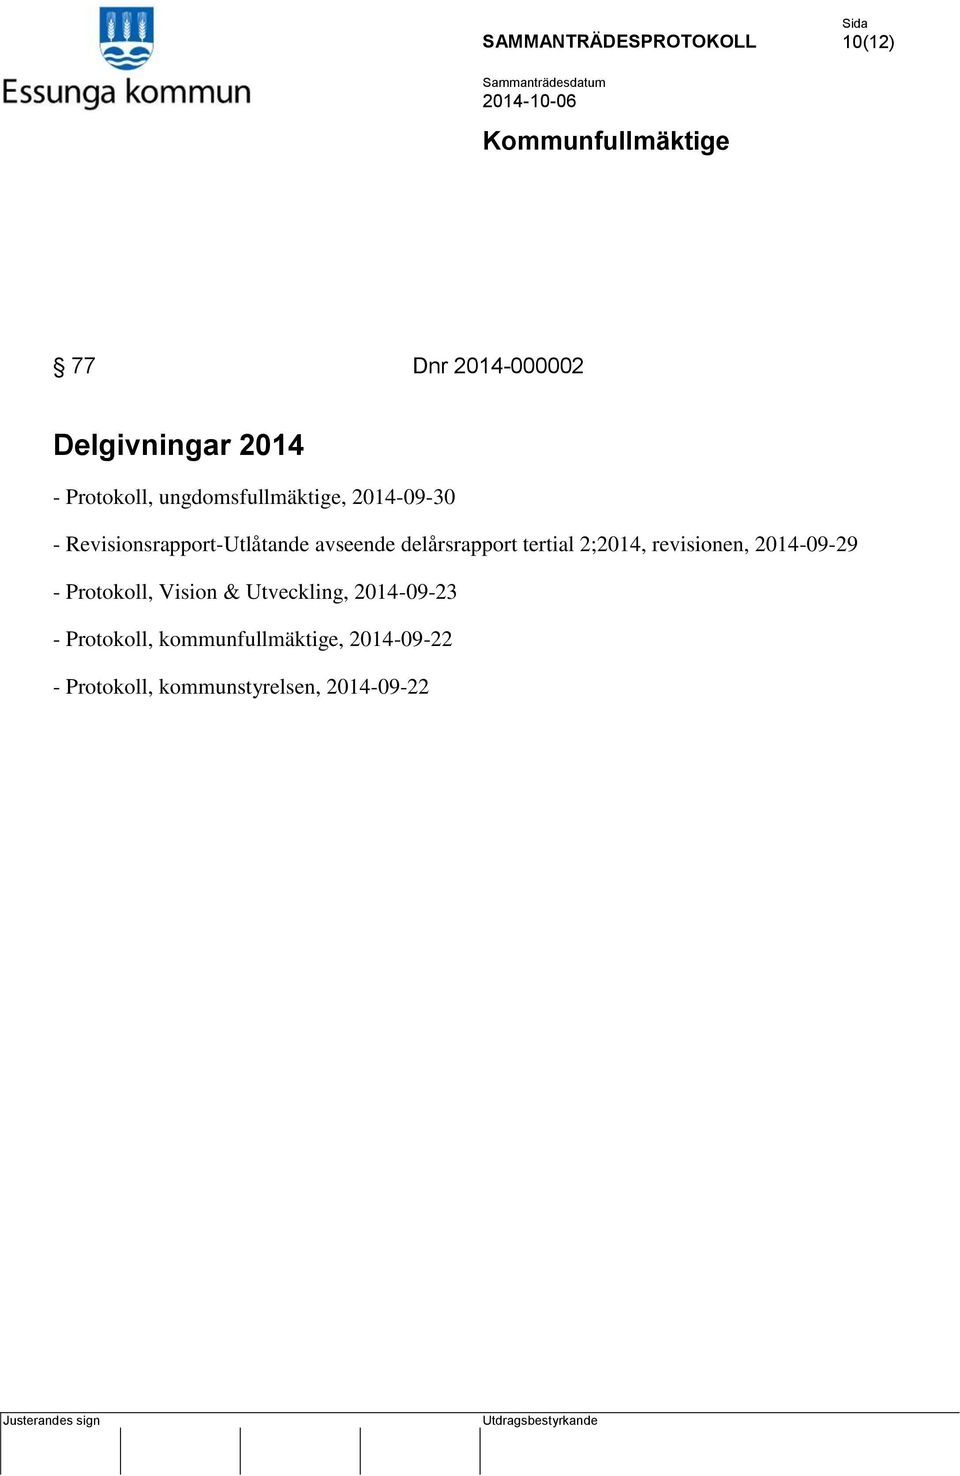 2;2014, revisionen, 2014-09-29 - Protokoll, Vision & Utveckling, 2014-09-23